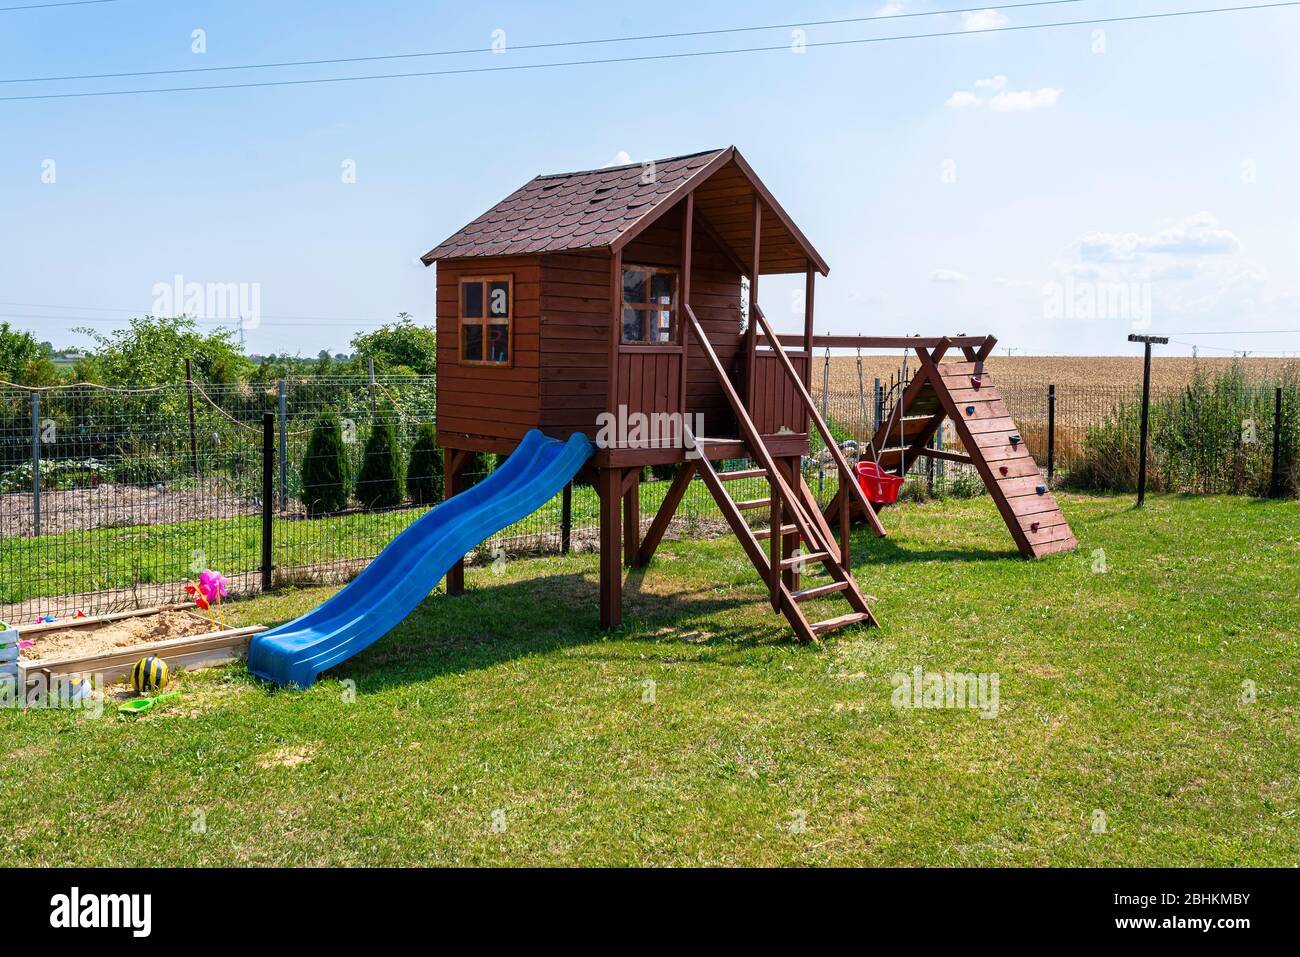 Kinderspielplatz am Hausgarten, sichtbares Holzhaus, schöner Frühlingstag. Stockfoto